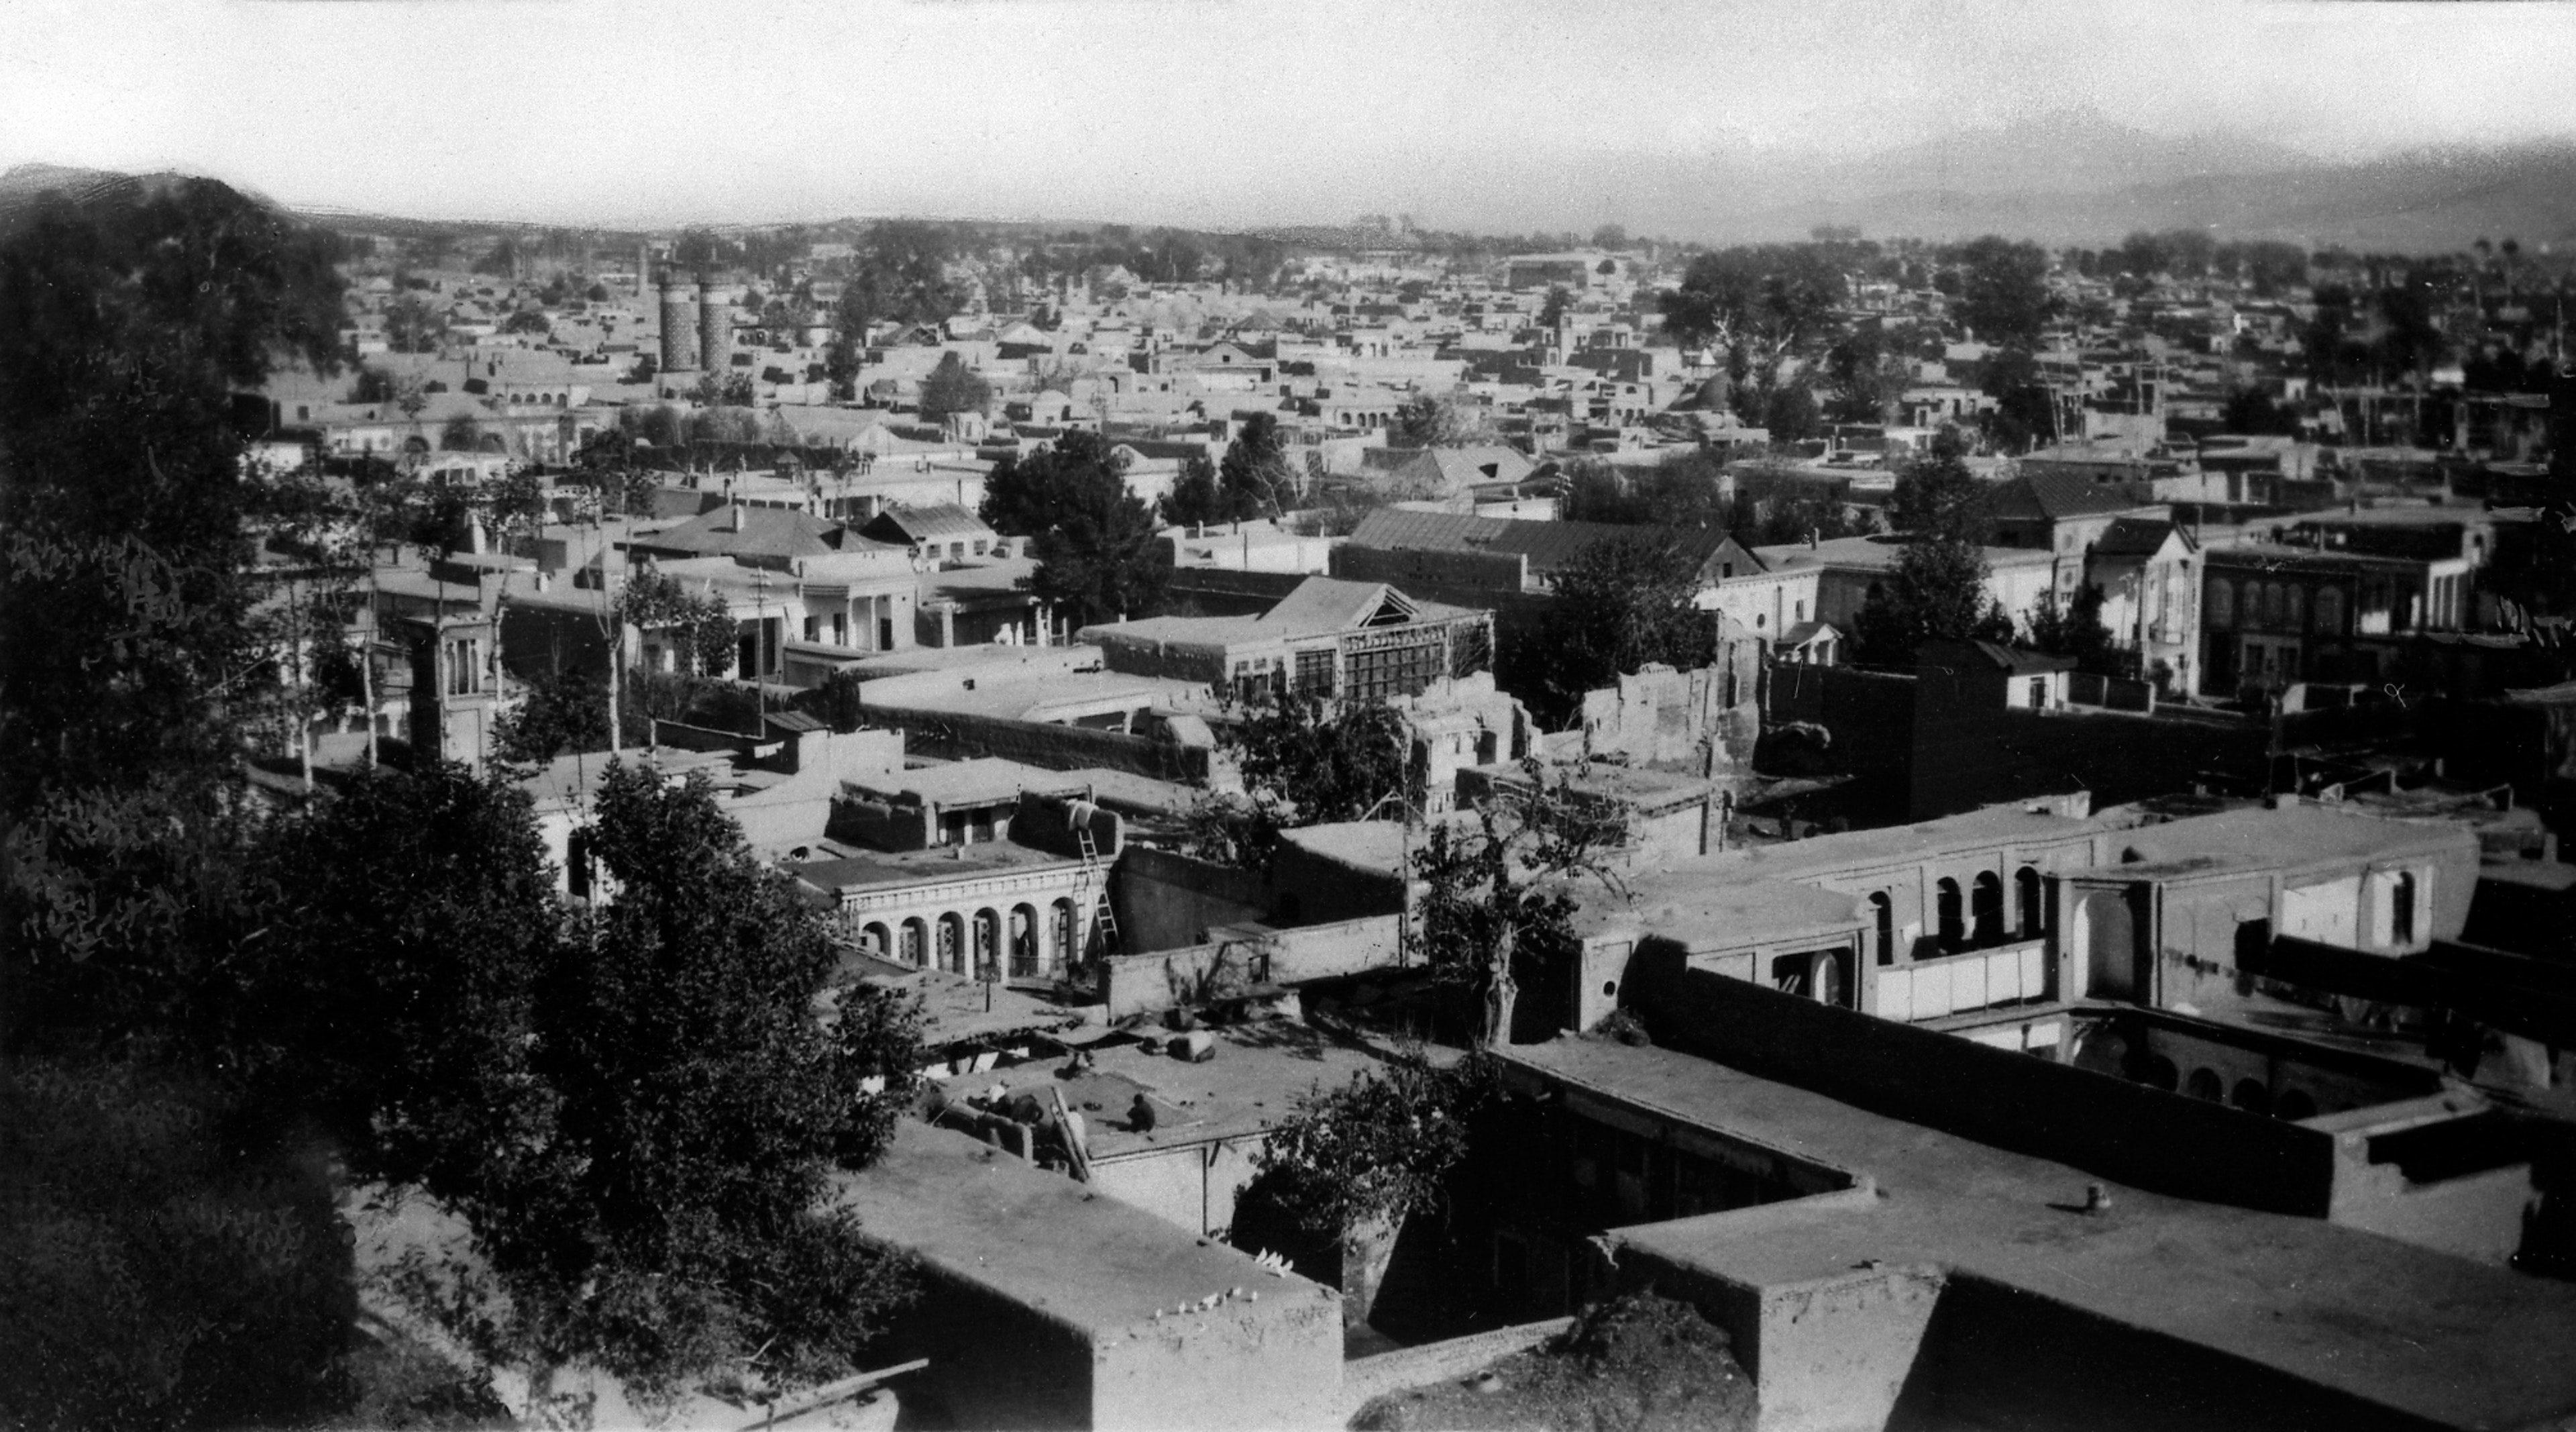 Teheran, Persja, gdzie urodził się 'Abdu'l-Bahá, tu w latach trzydziestych XX wieku.